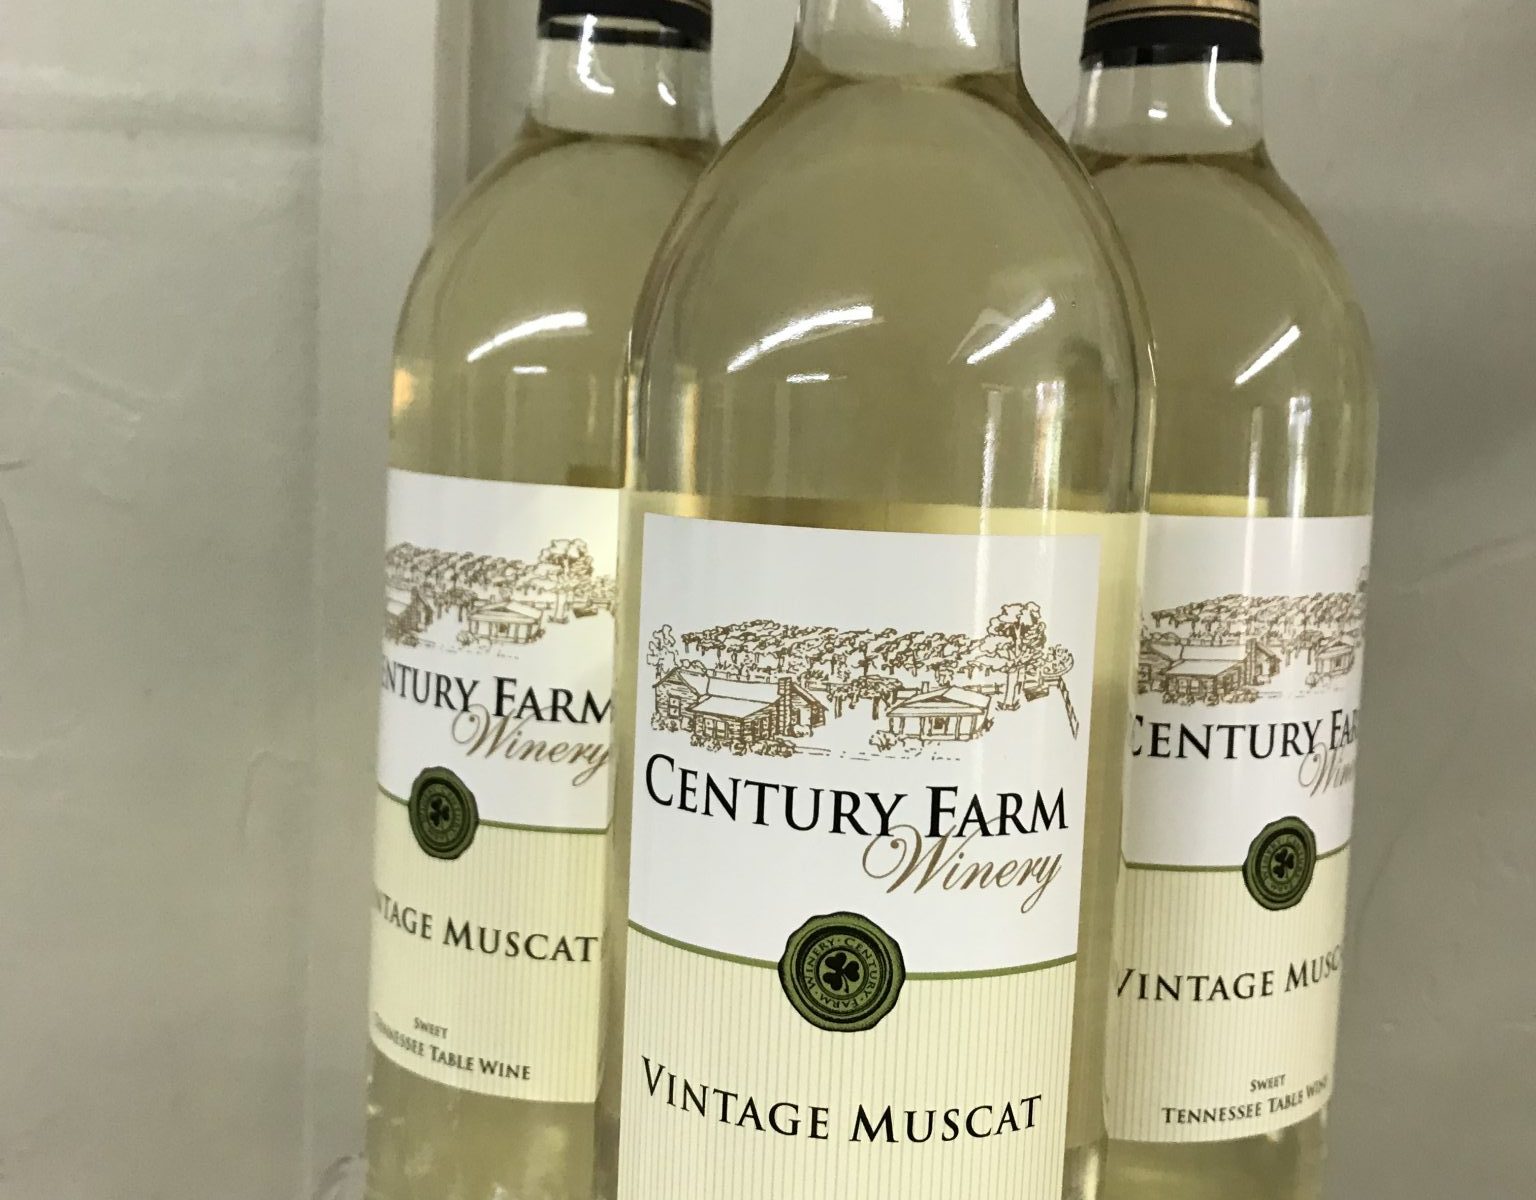 Muscat Vintage Wine Label France 